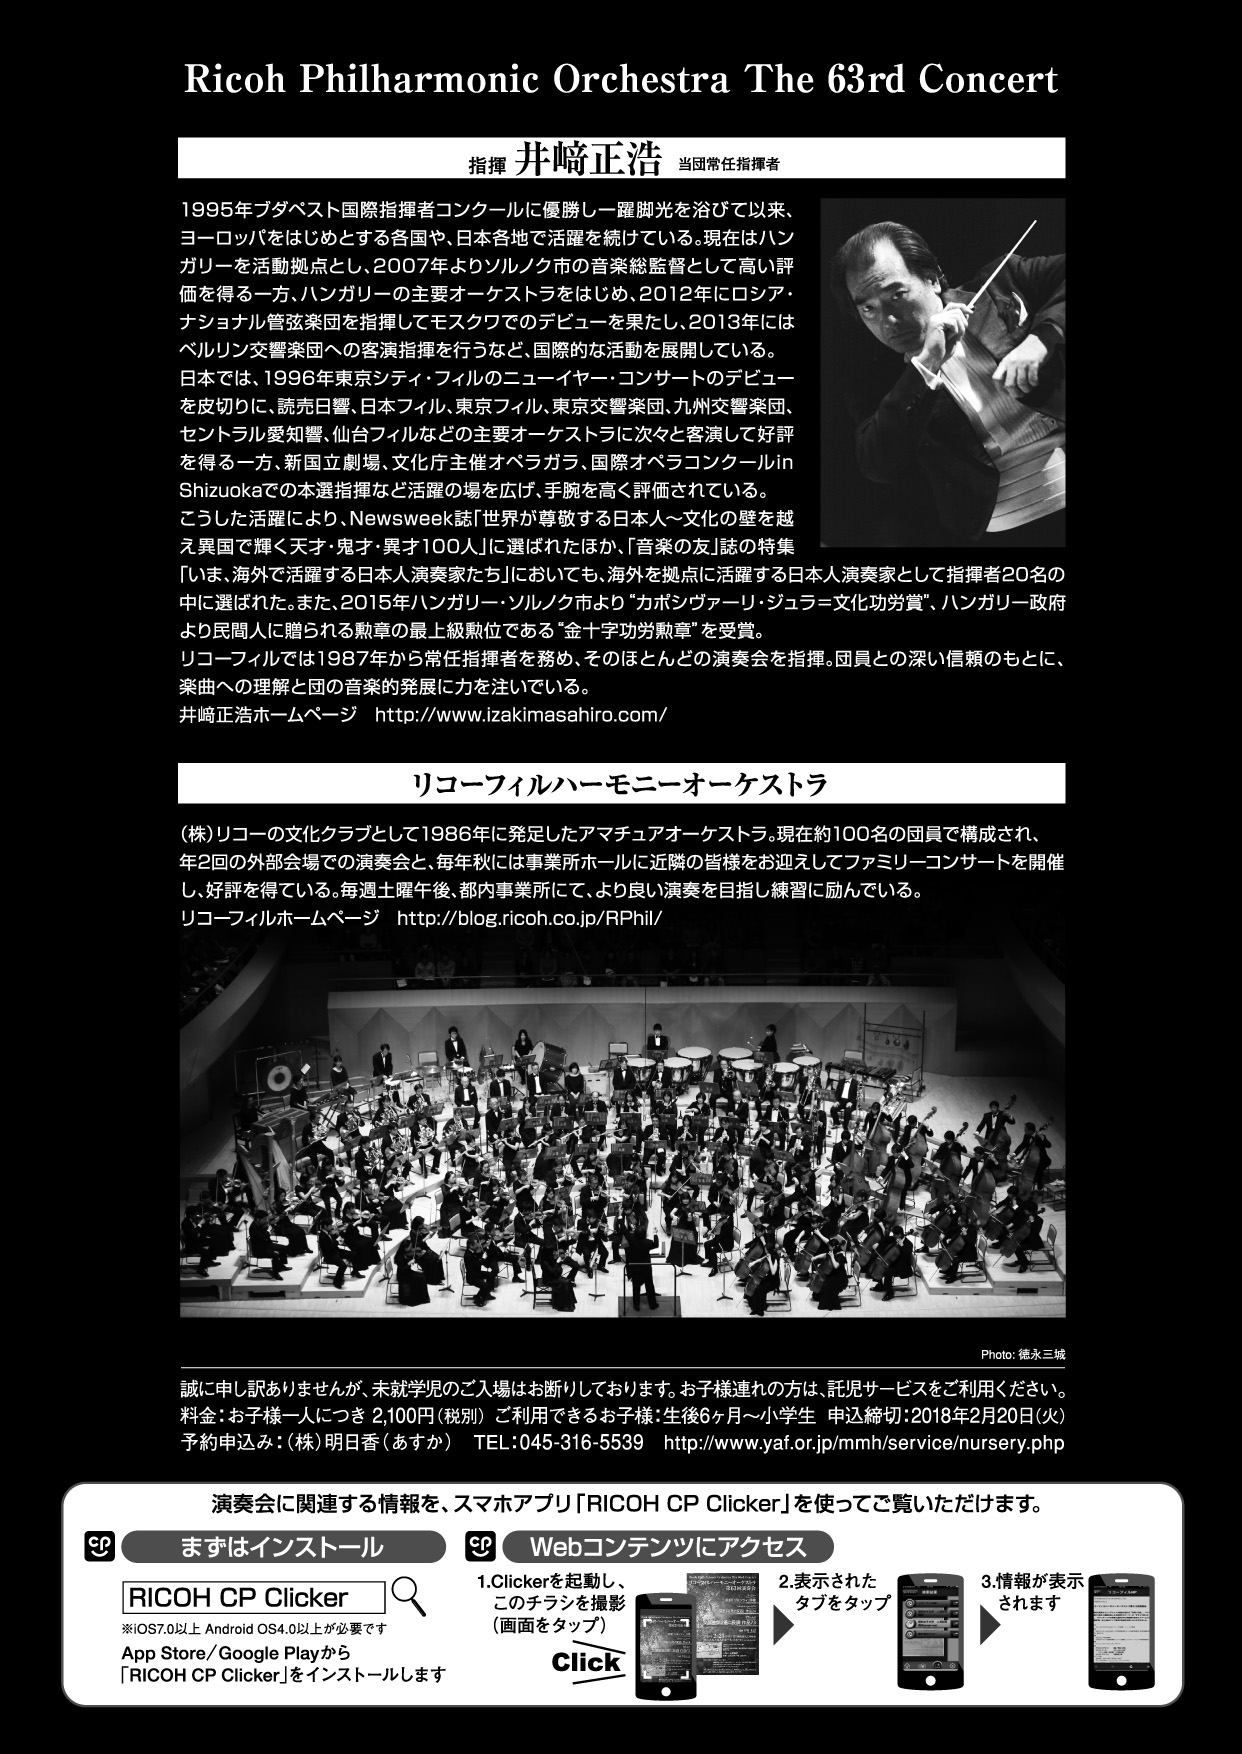 http://blog.ricoh.co.jp/RPhil/63rd-flyer2.jpg